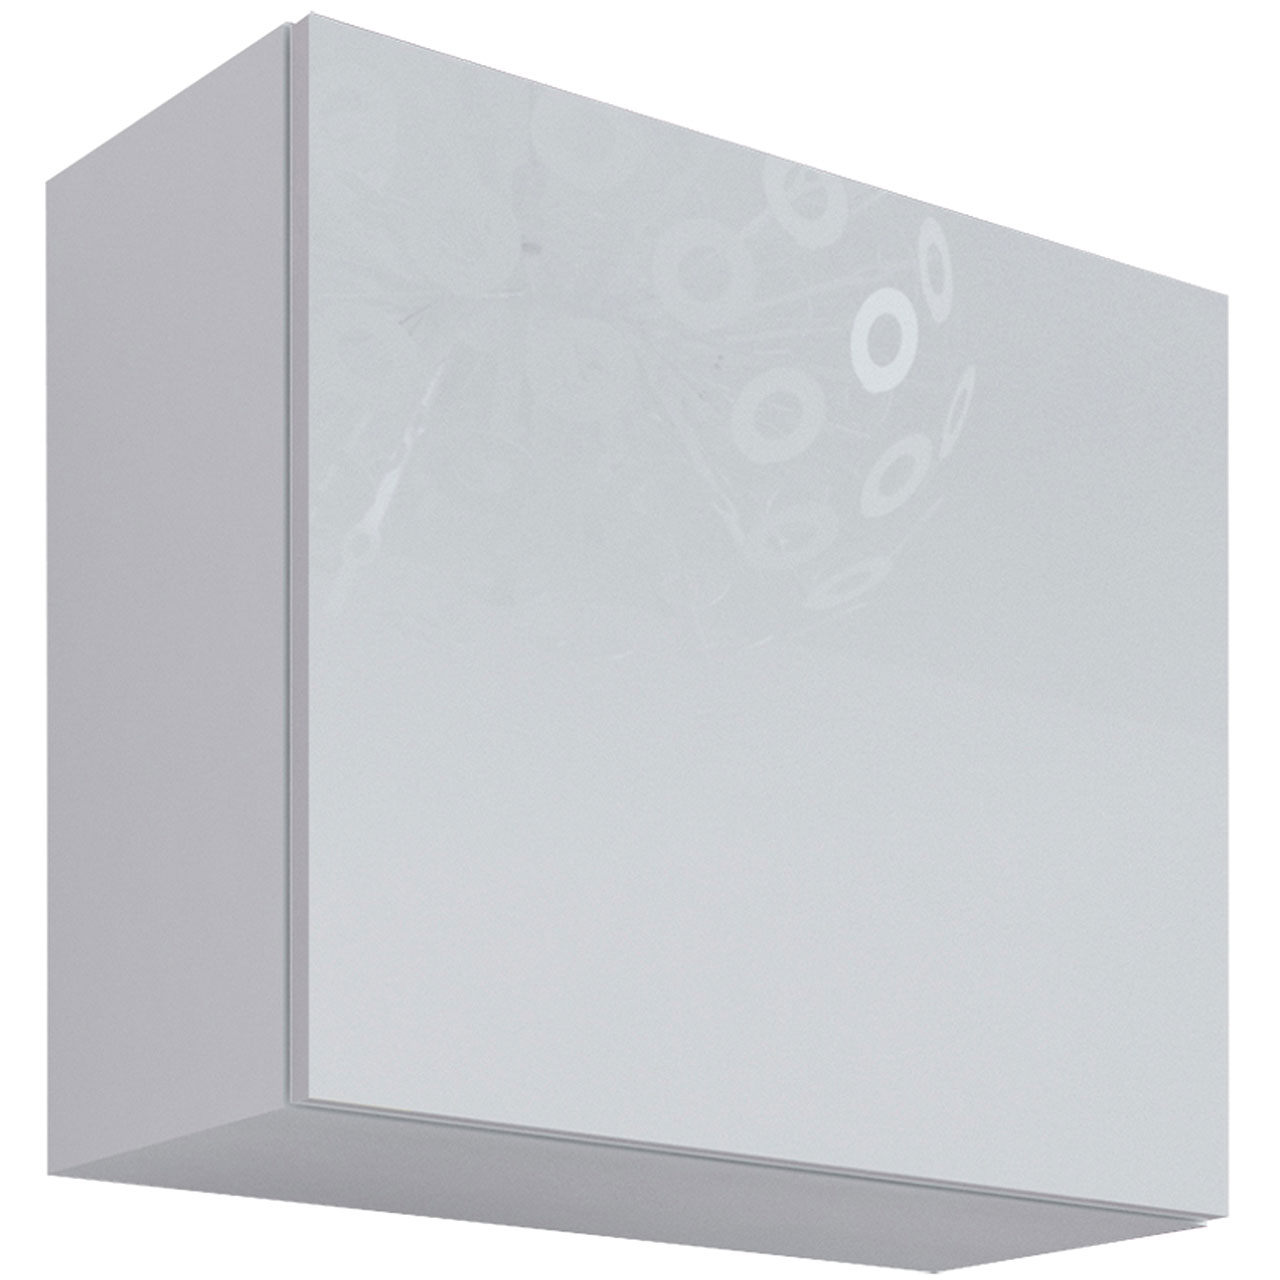 Wall cabinet VIGO KWADRAT VG10A white / white gloss